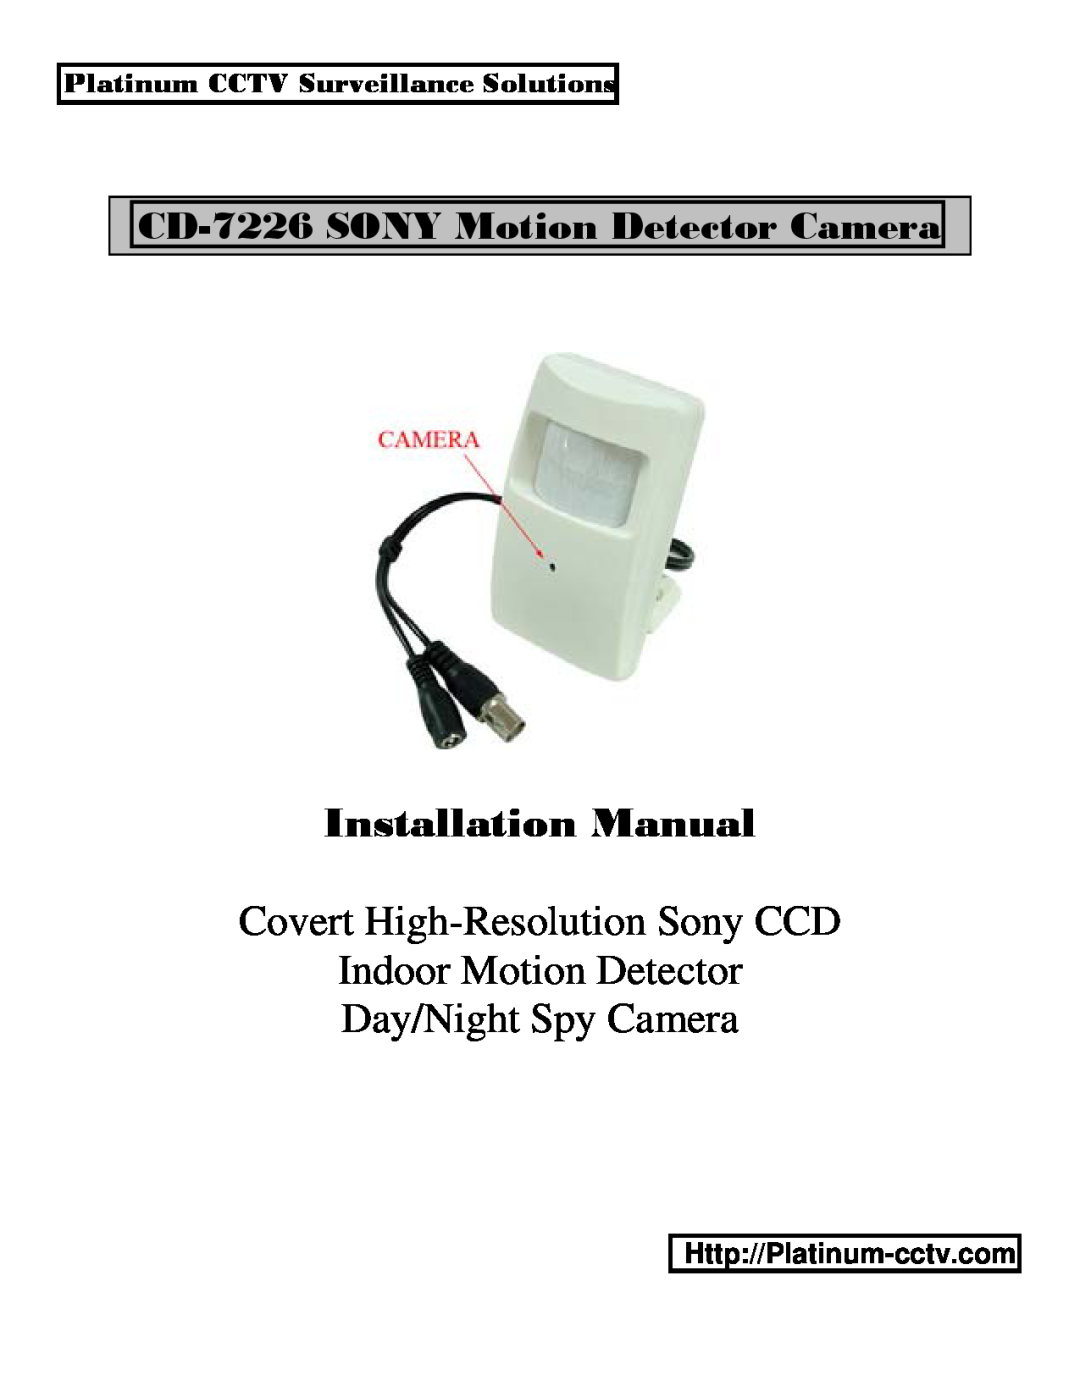 Sony CD-7226 installation manual Platinum CCTV Surveillance Solutions, Installation Manual, Covert High-ResolutionSony CCD 